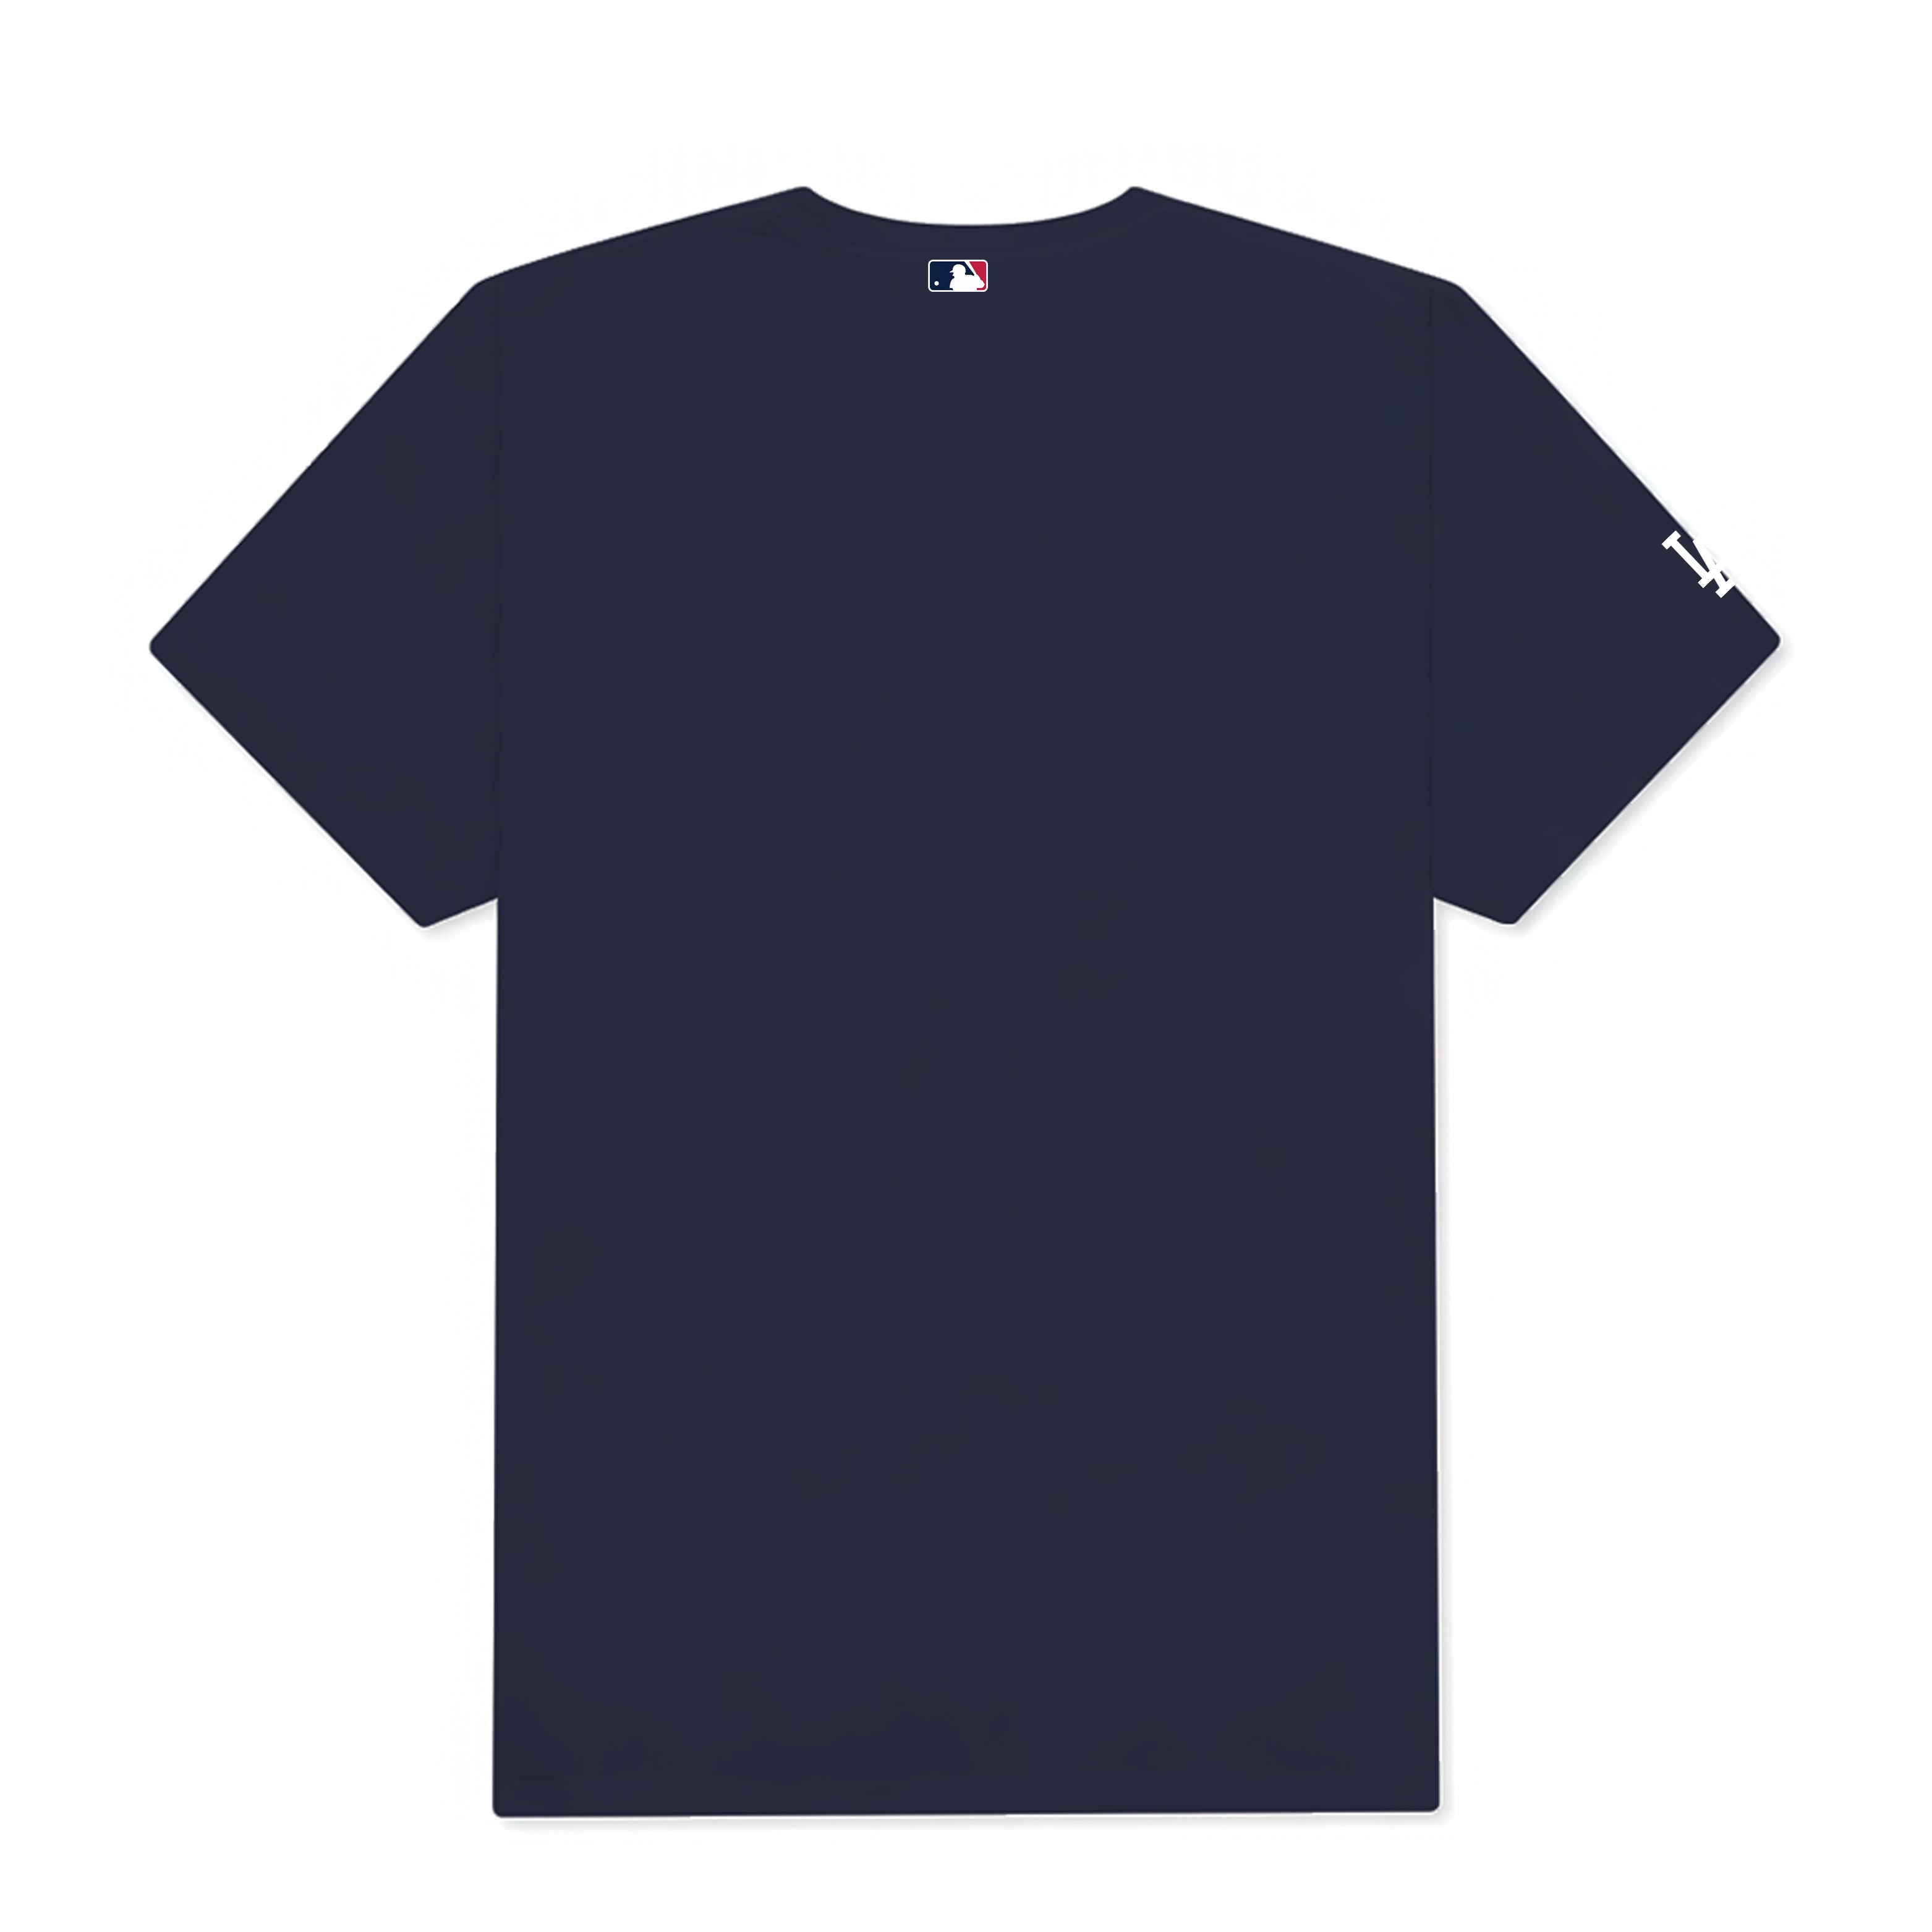 MLB New York Yankees Disney T-Shirt